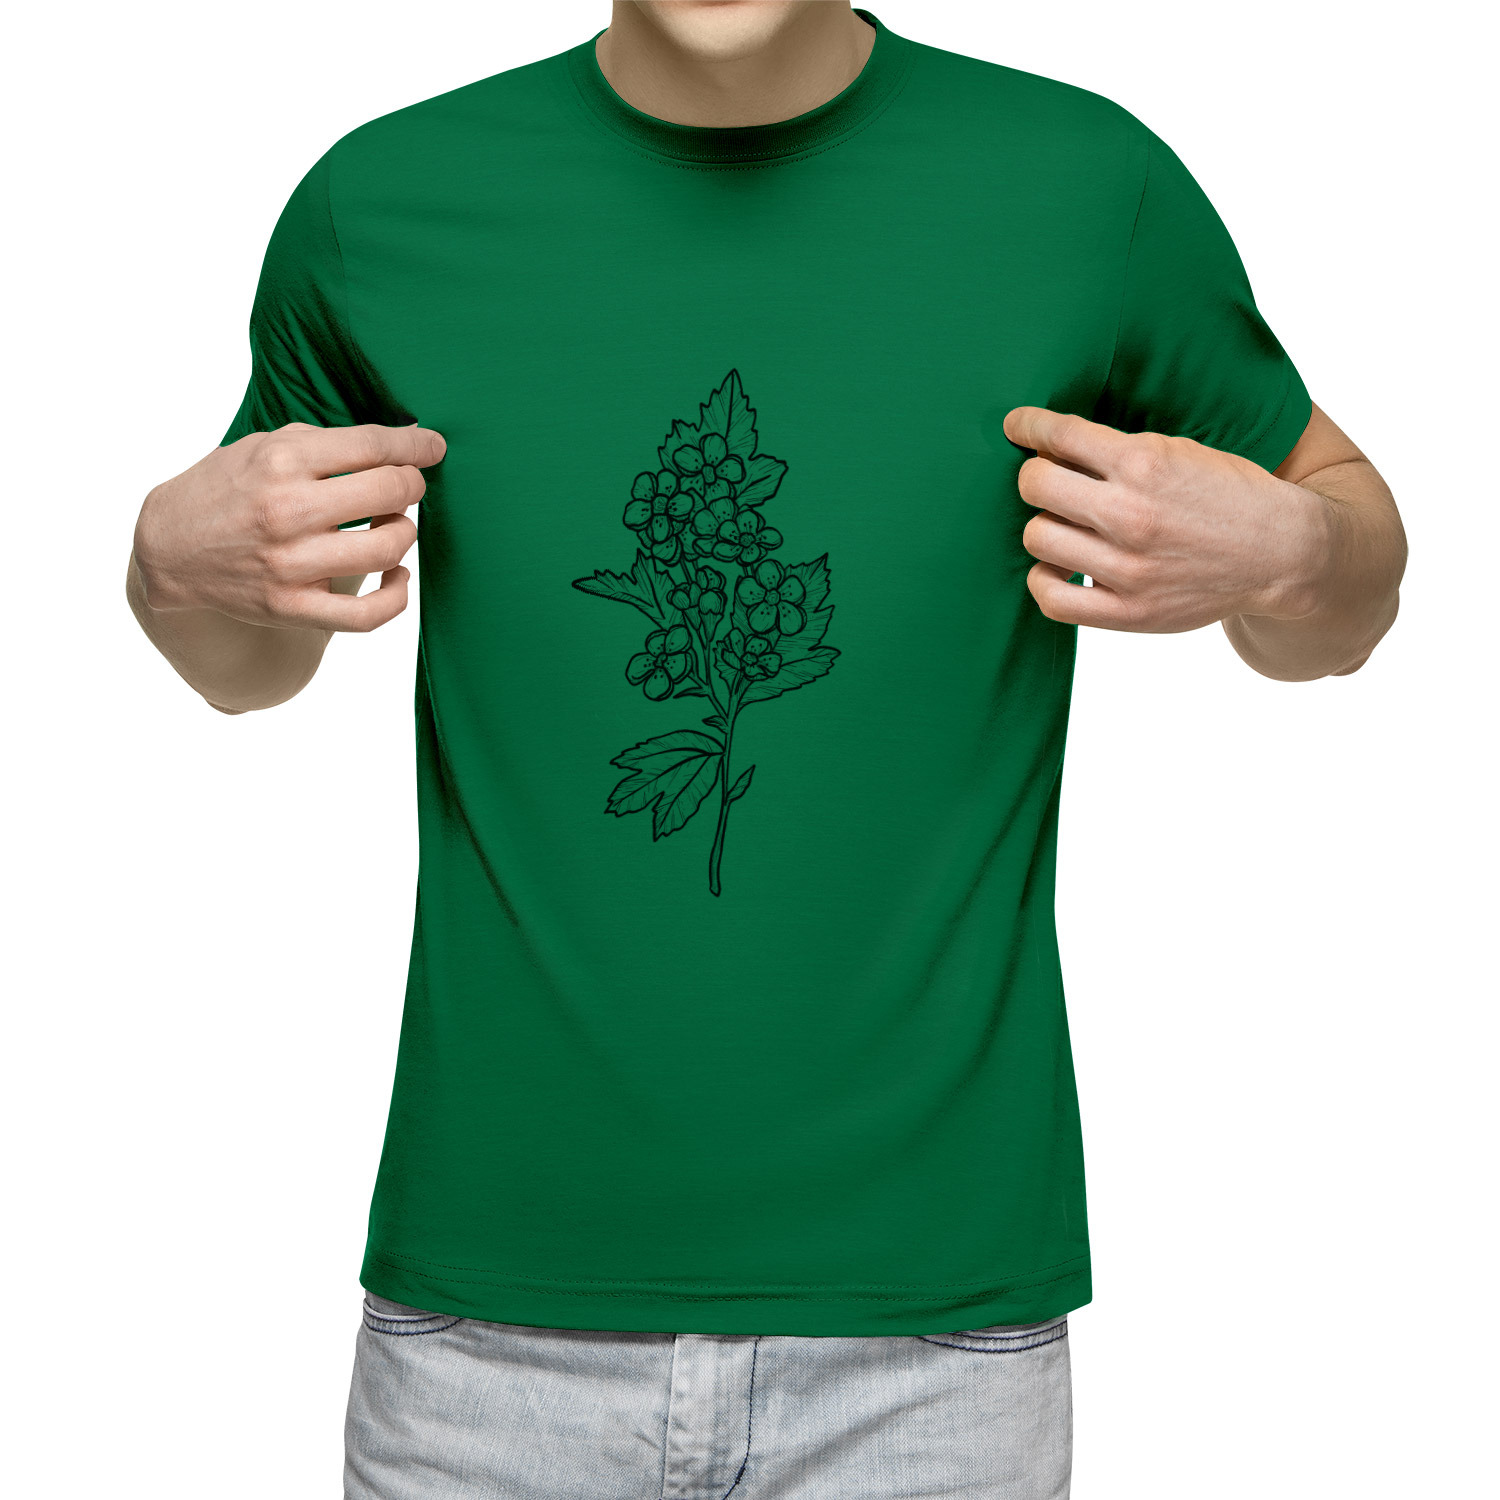 Зеленая футболка с принтом